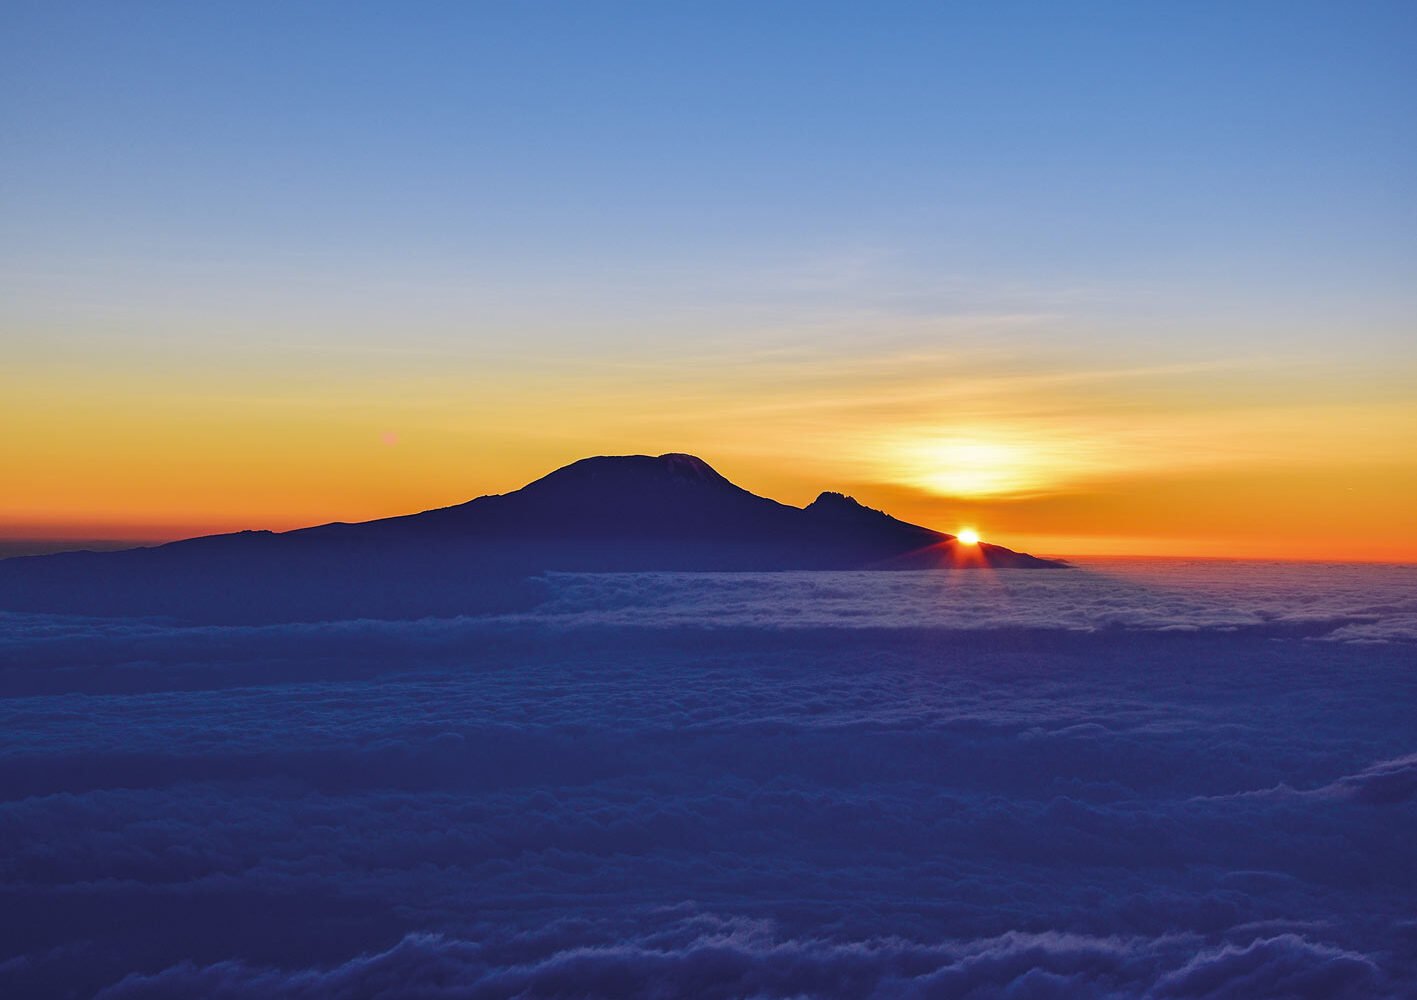 Tansania Mount Meru Kilimanjaro